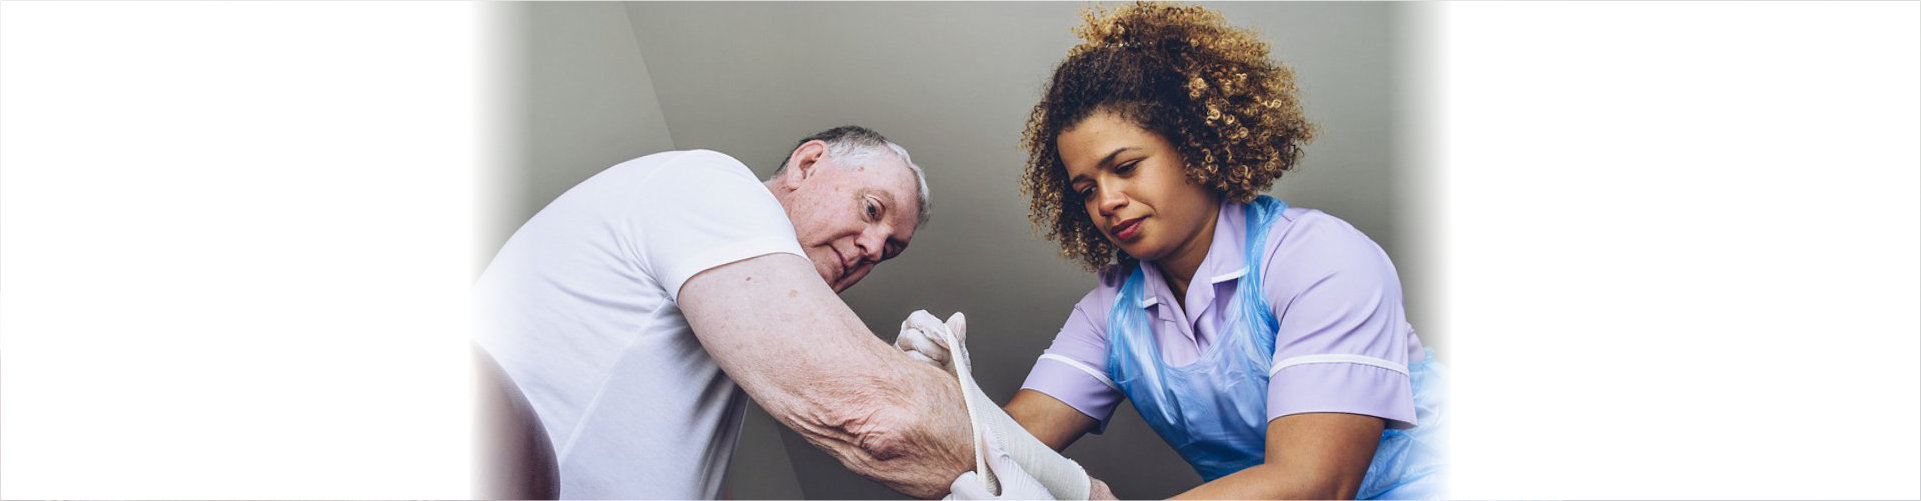 caregiver putting bandage on senior man